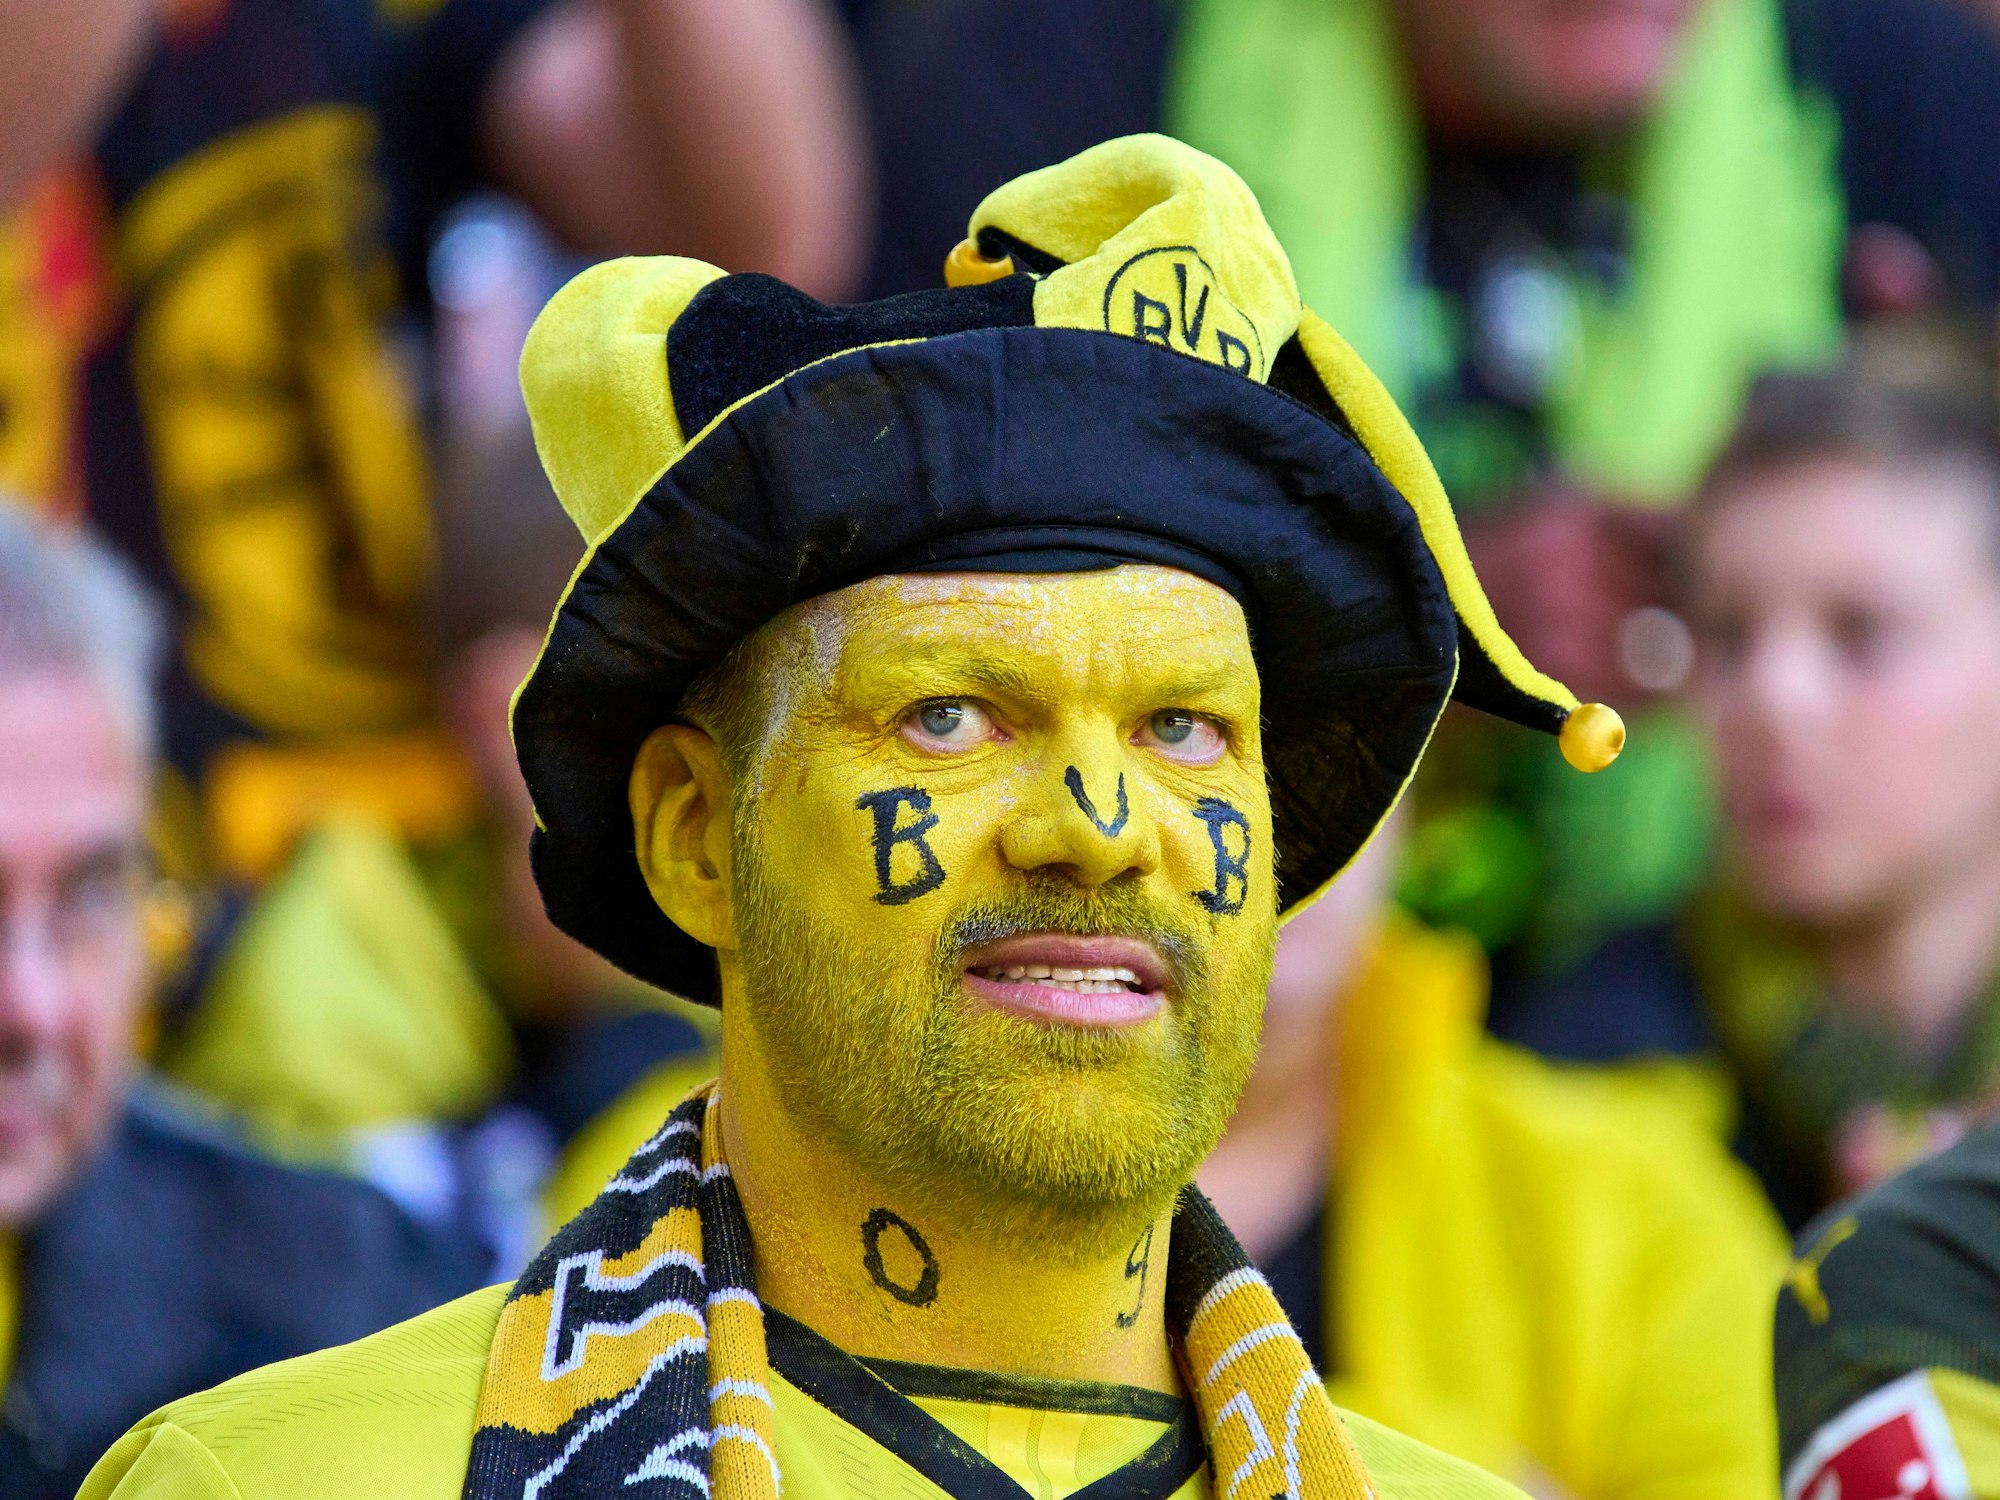 Ein BVB-Fan mit Gesichtsbemalung im Stadion.